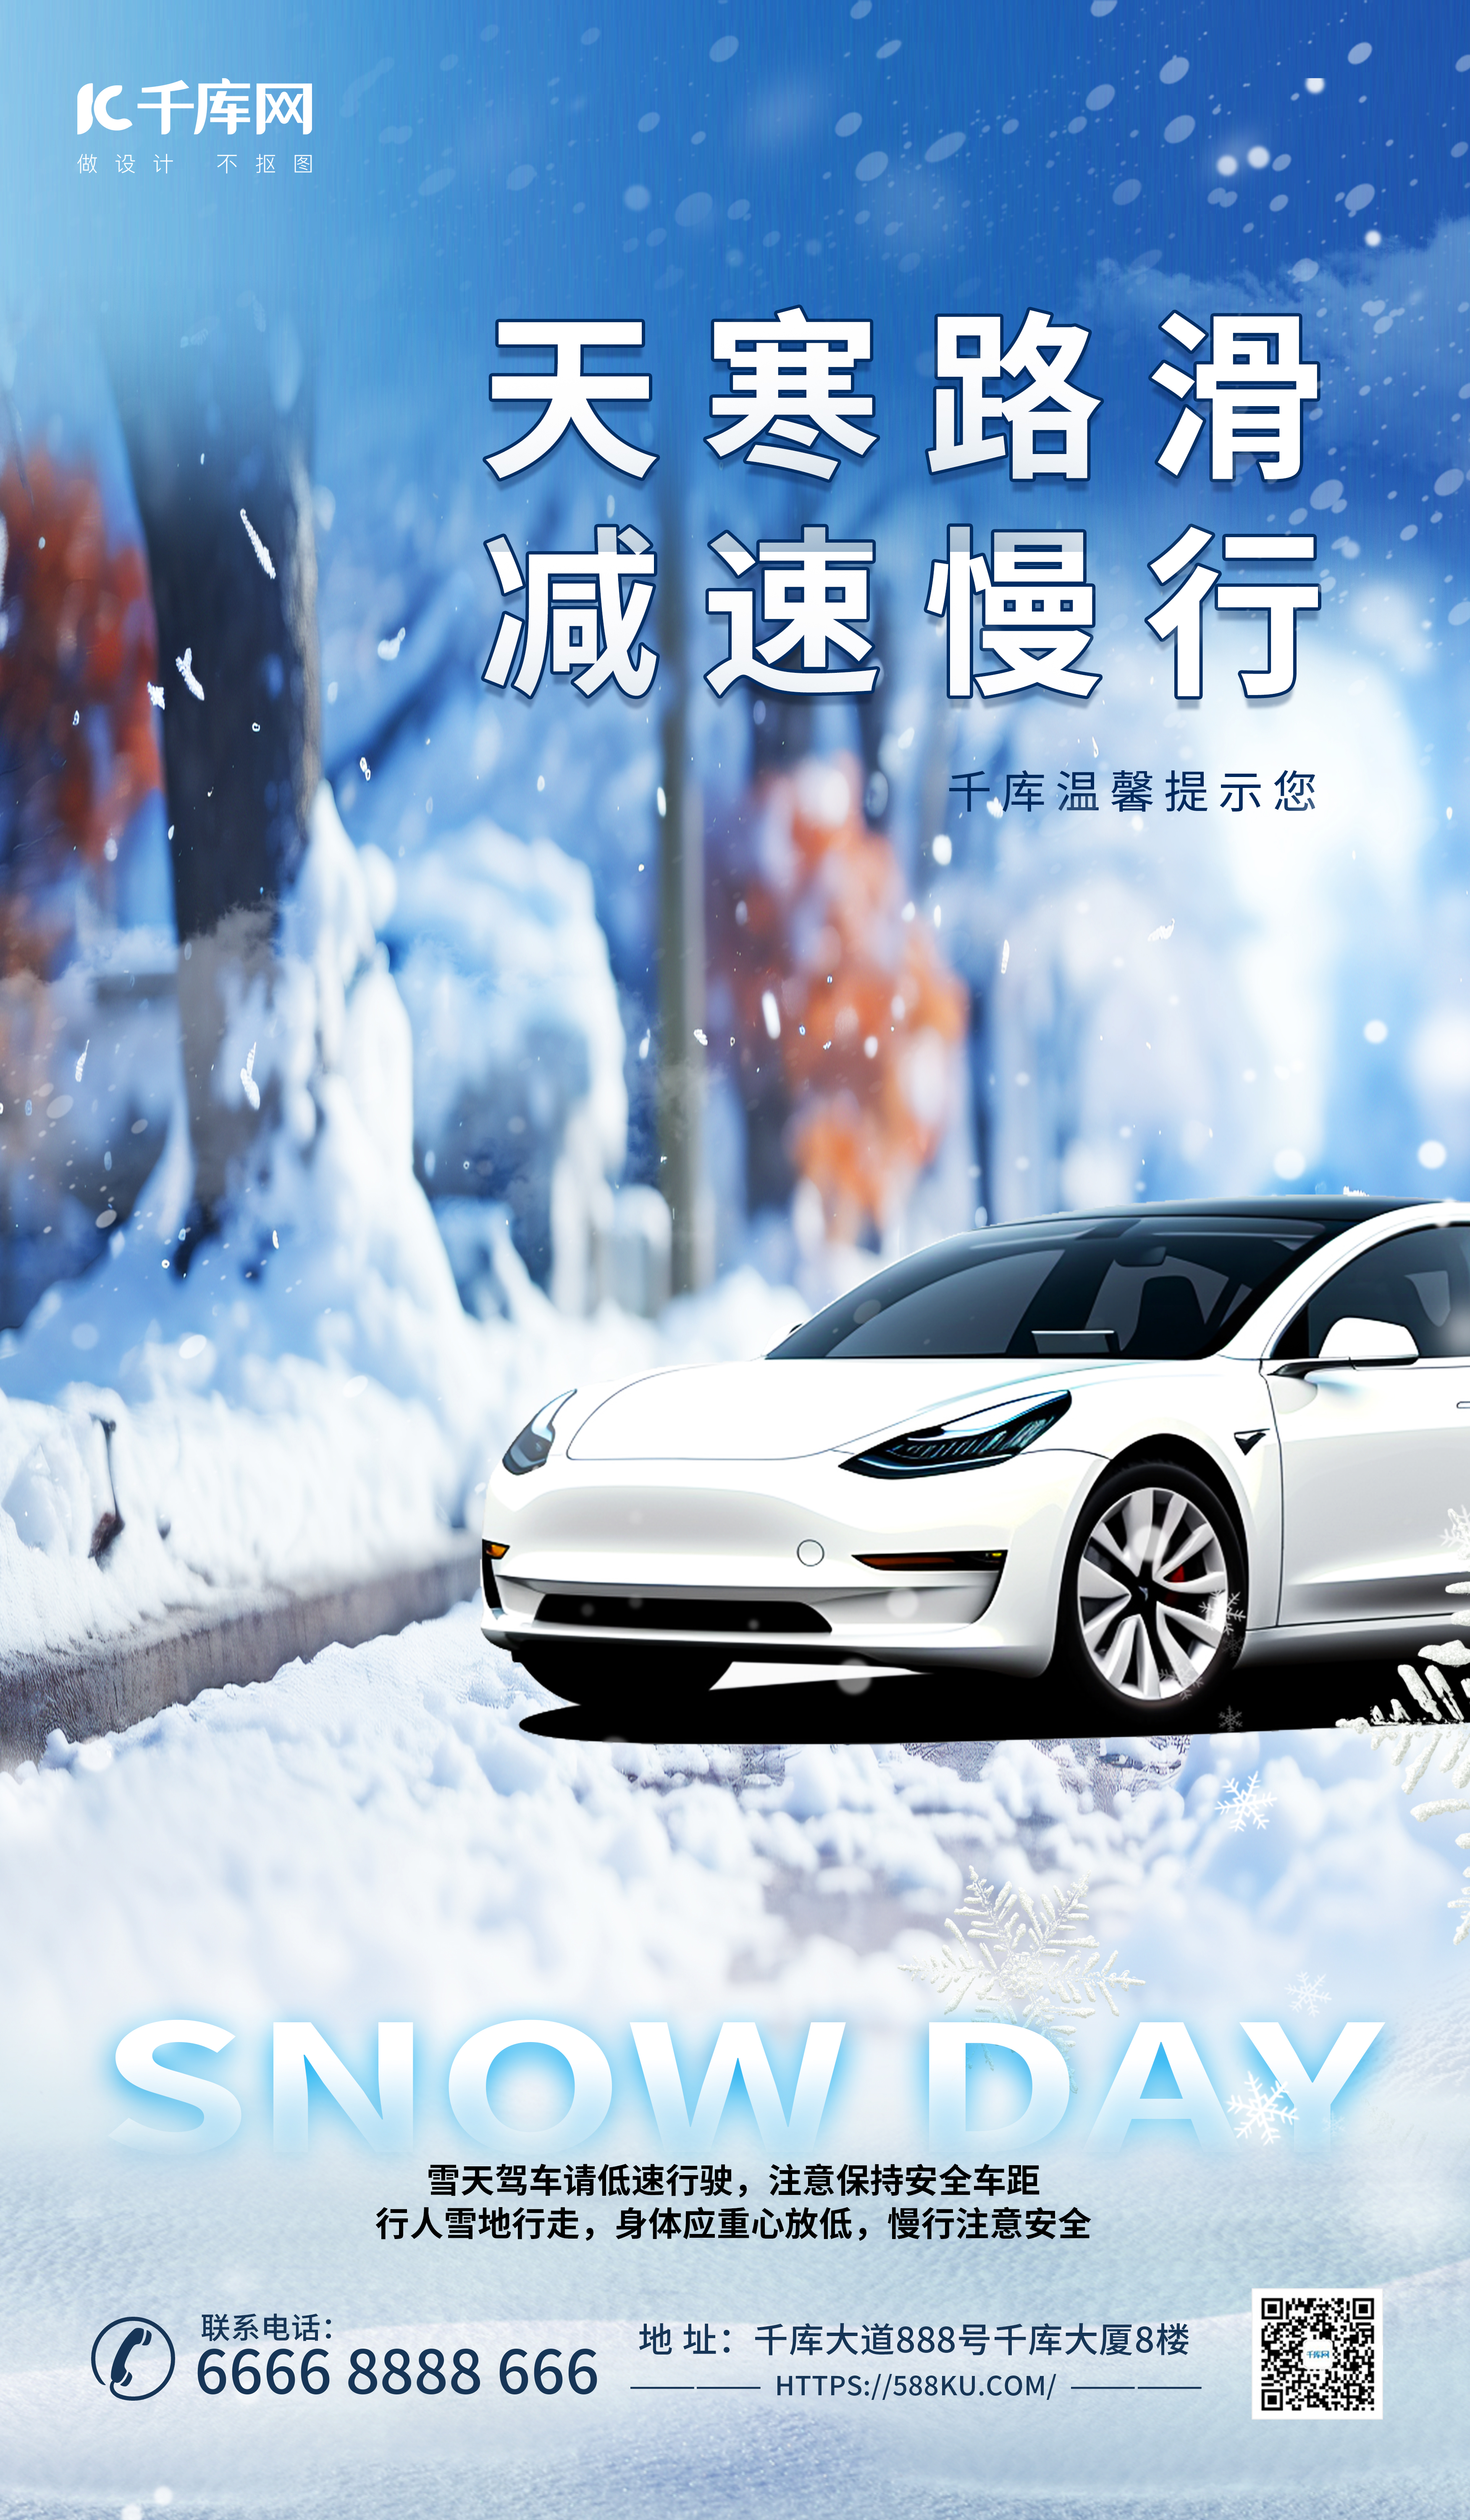 下雪当心路滑汽车雪地元素蓝色渐变广告宣传海报图片